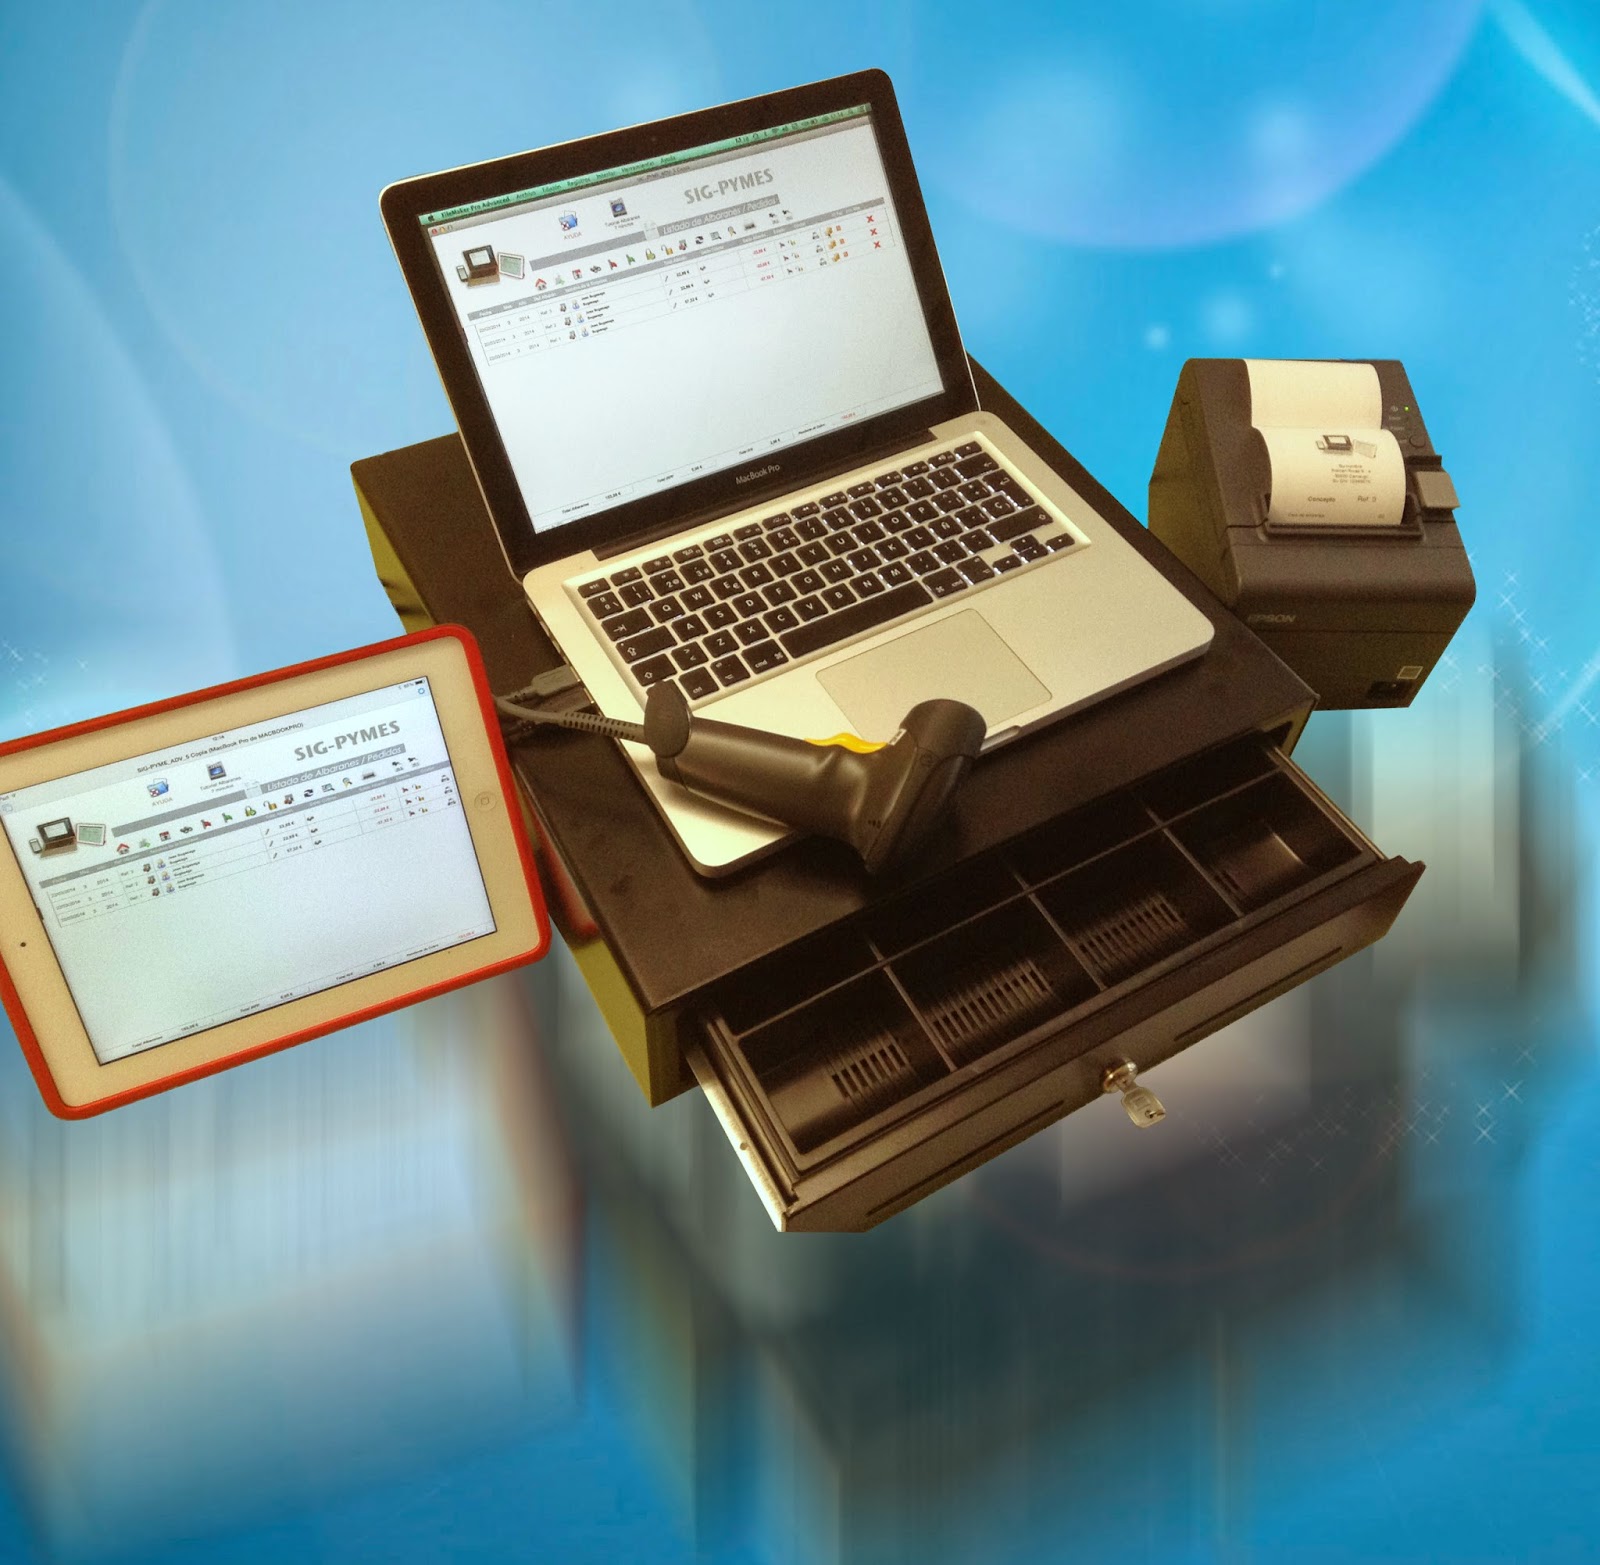 Sig Pyme para Mac con lector de codigo de barras, impresora de ticket y caja monedas